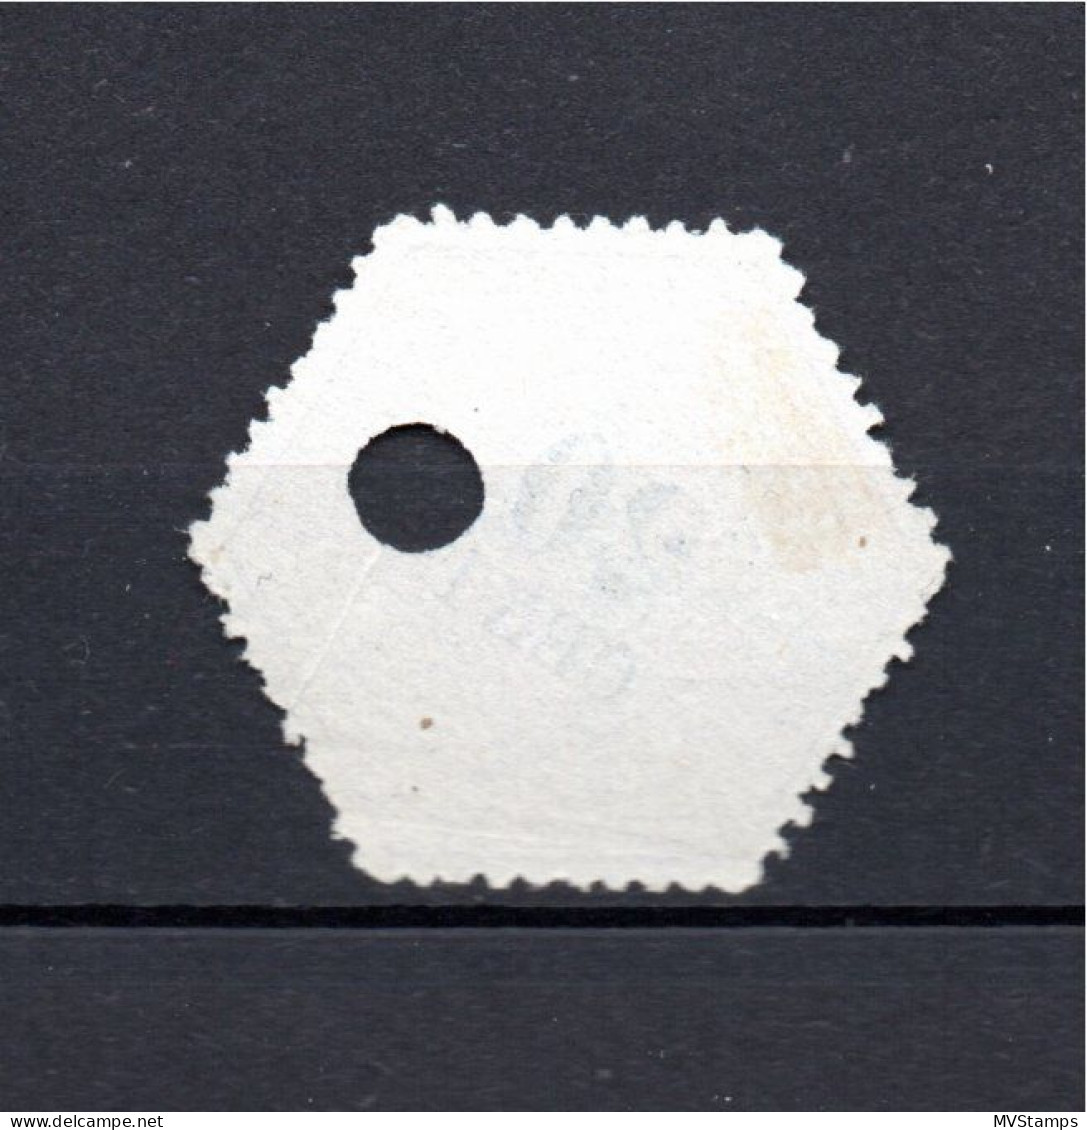 Niederlande 1877 Telegram Marke (TG 6) Gebraucht - Telegraphenmarken